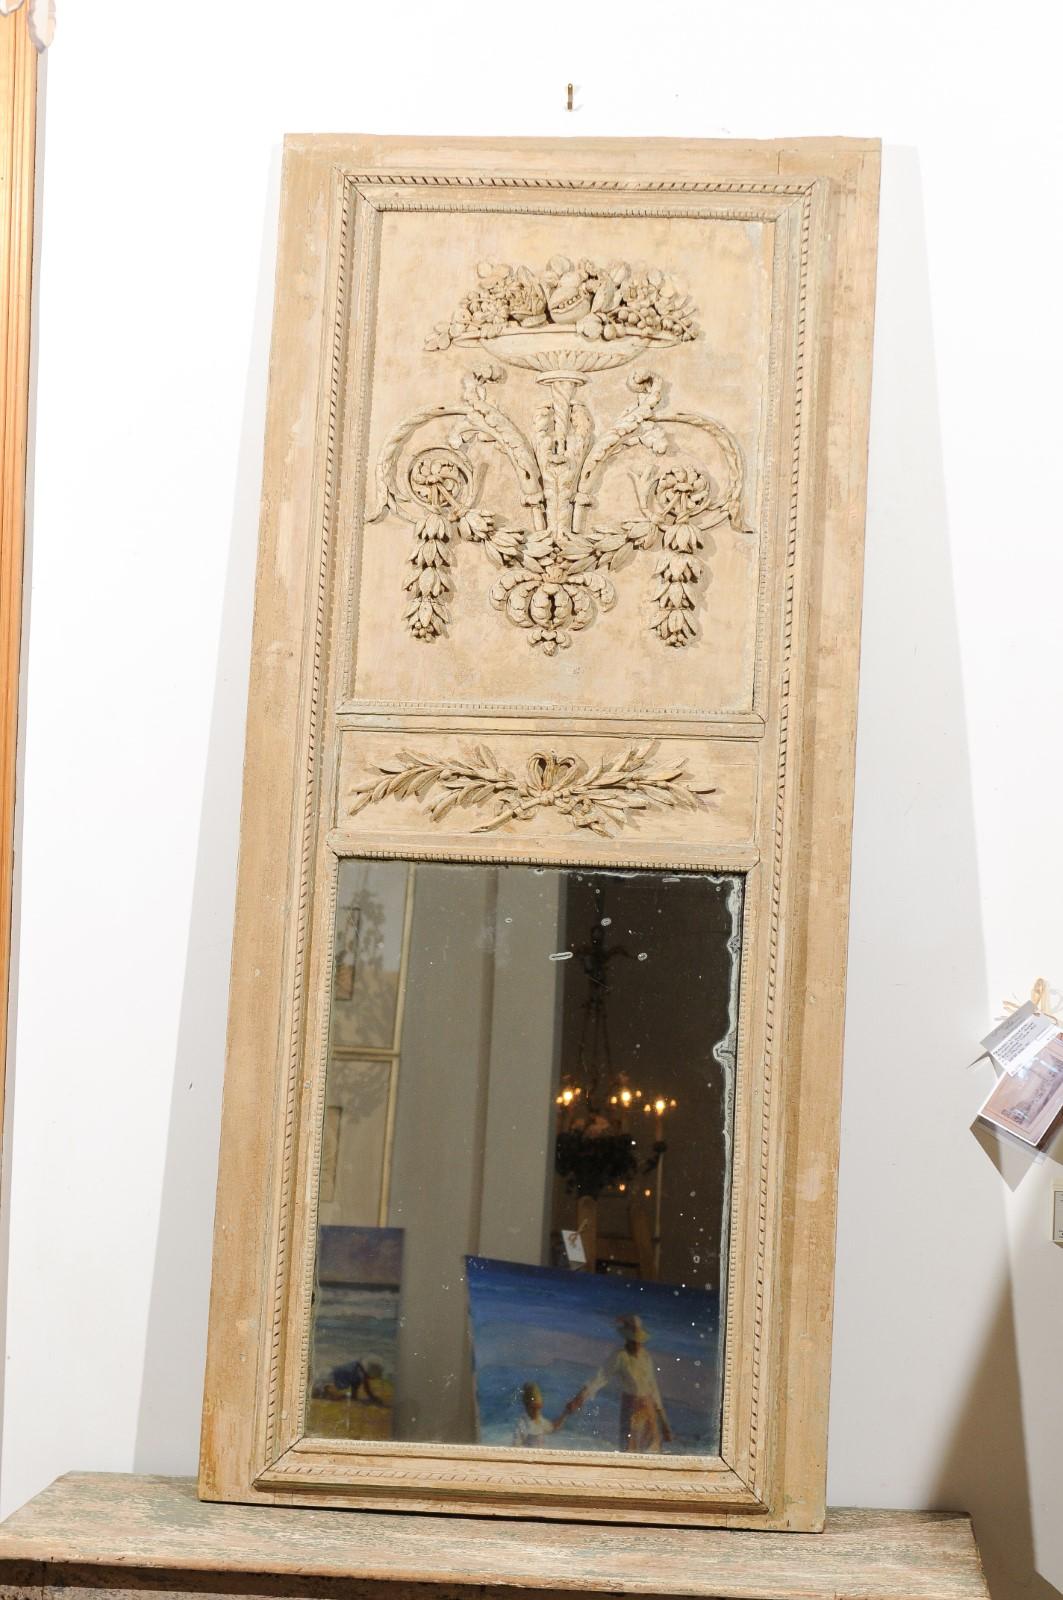 Miroir trumeau d'époque Louis XVI en bois peint français de la fin du XVIIIe siècle, avec des motifs de feuillage, de volutes et d'urnes. Né en France à la fin du siècle des Lumières, ce miroir trumeau Louis XVI présente une Silhouette linéaire,